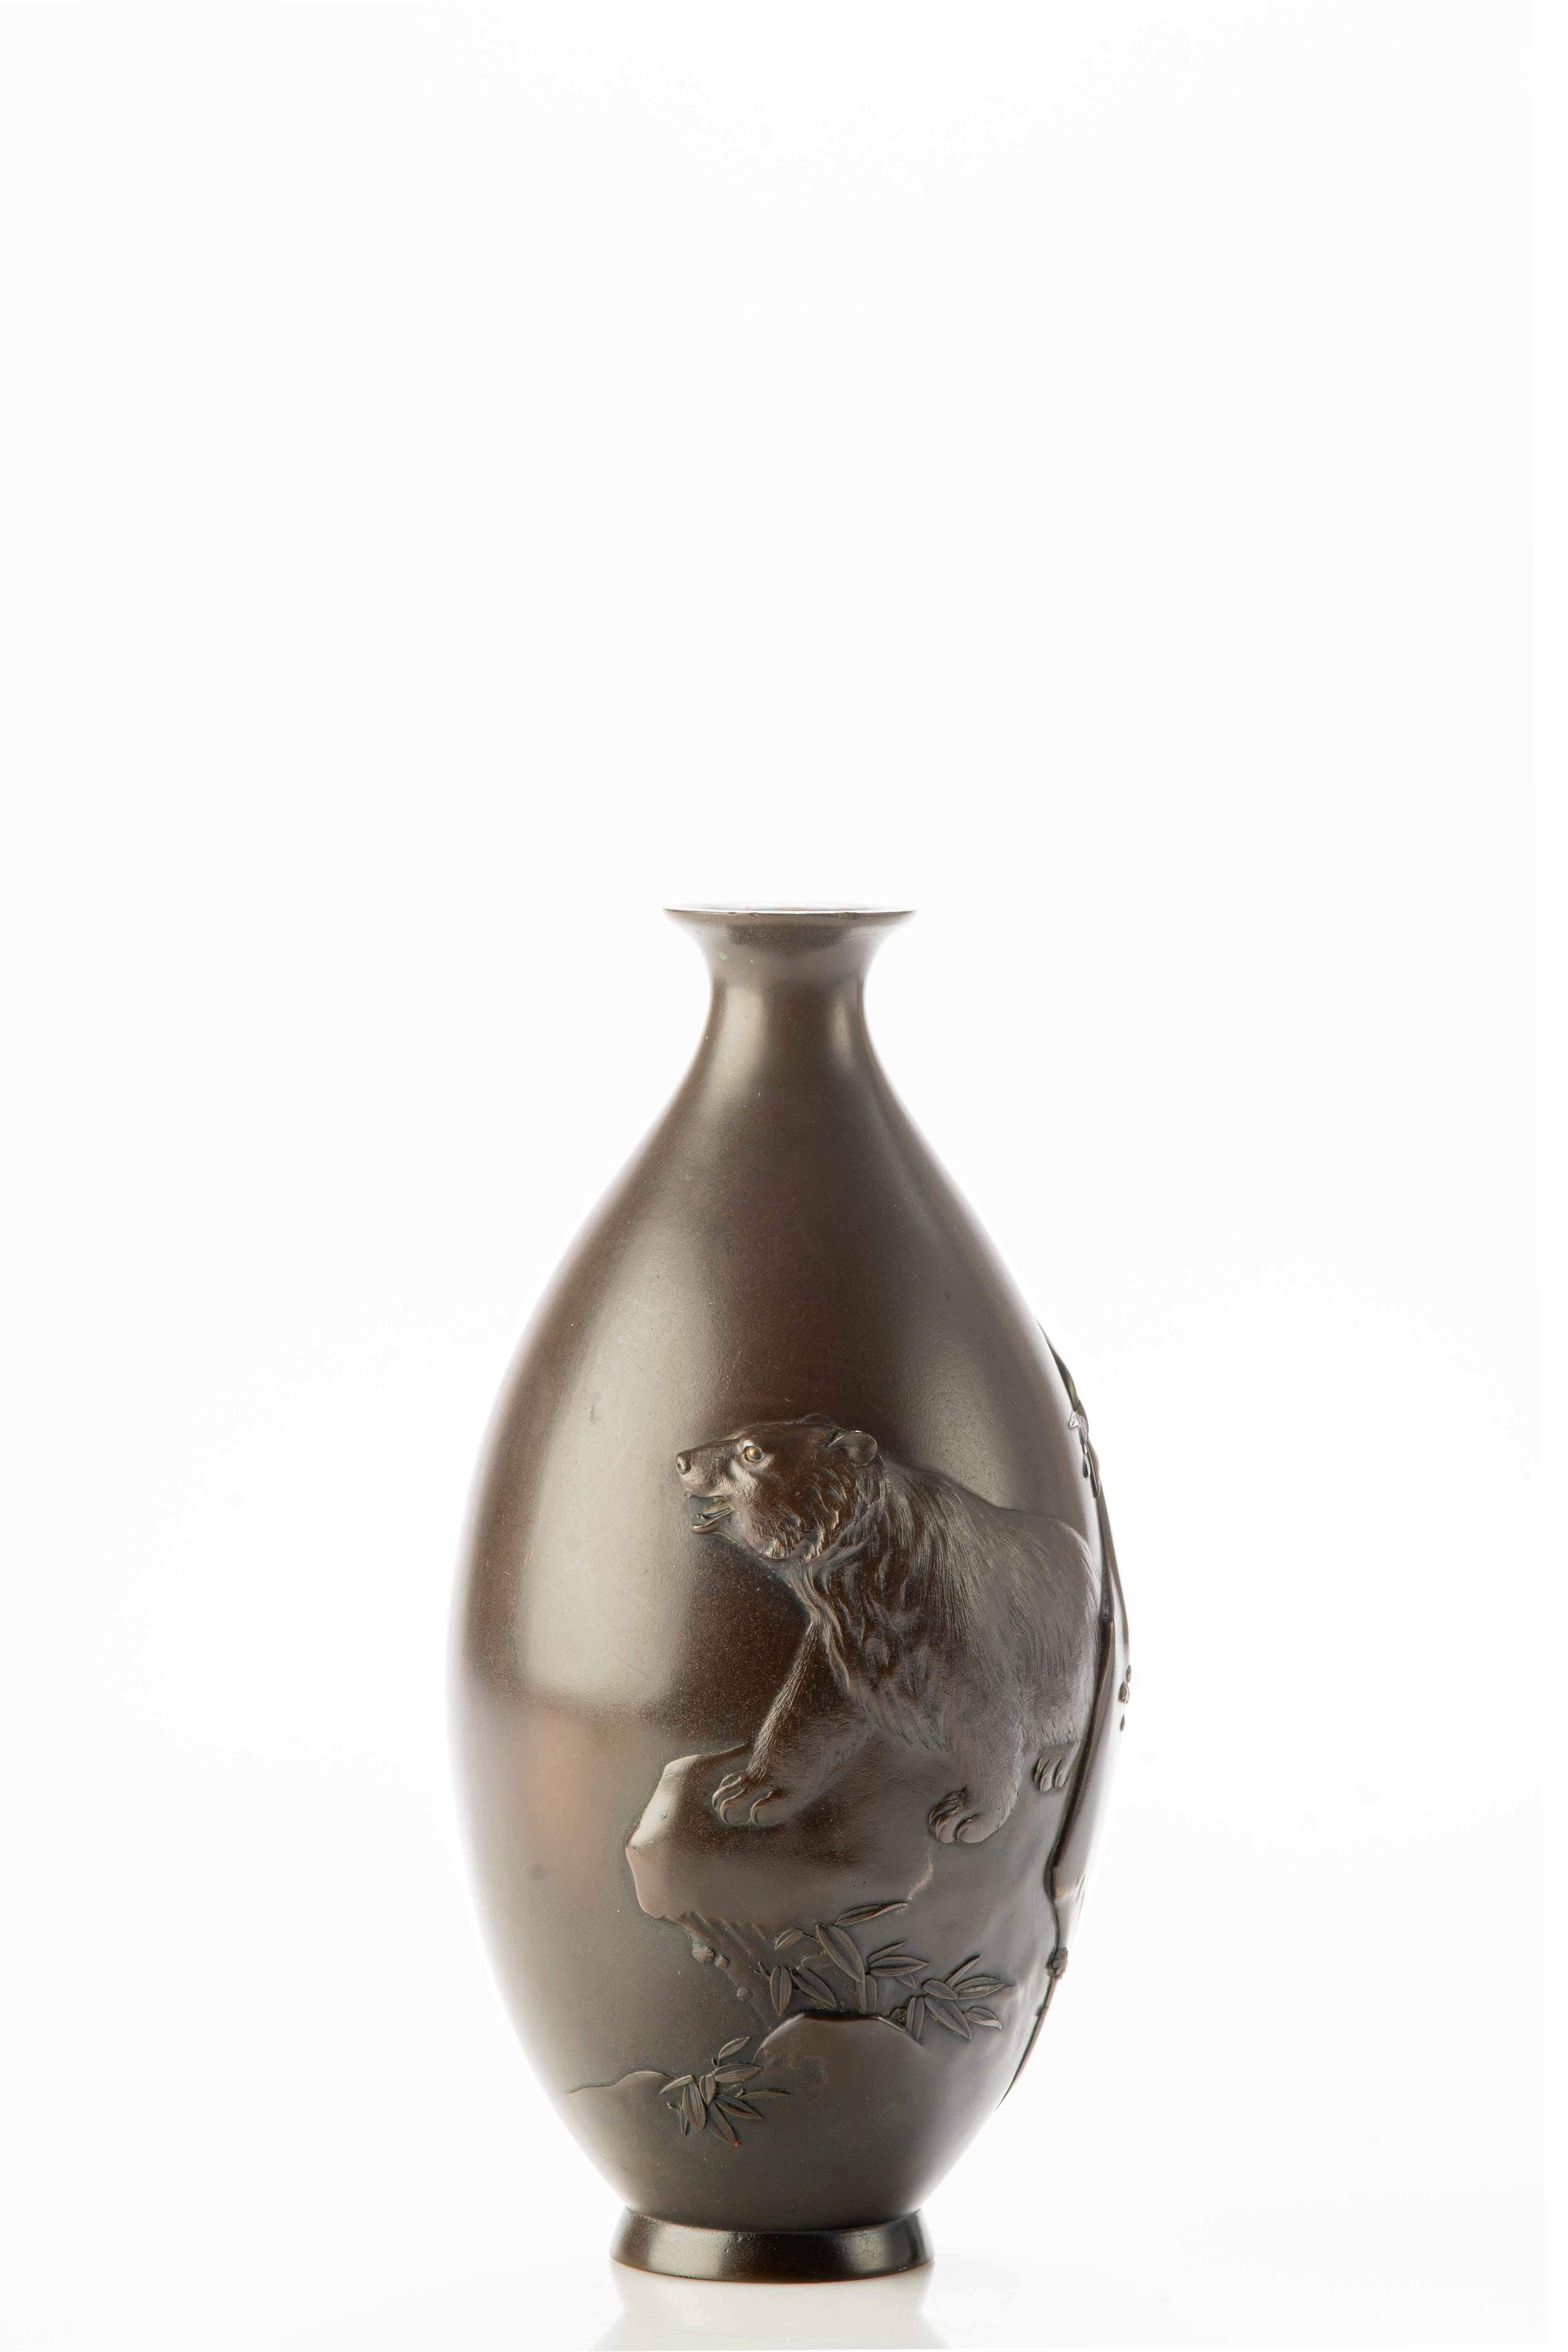 Vase japonais en bronze en forme de goutte travaillé avec une profondeur remarquable qui transforme l'œuvre en une scène tridimensionnelle époustouflante avec un ours majestueux en relief au centre qui se dresse puissamment sur un rocher.

L'ours